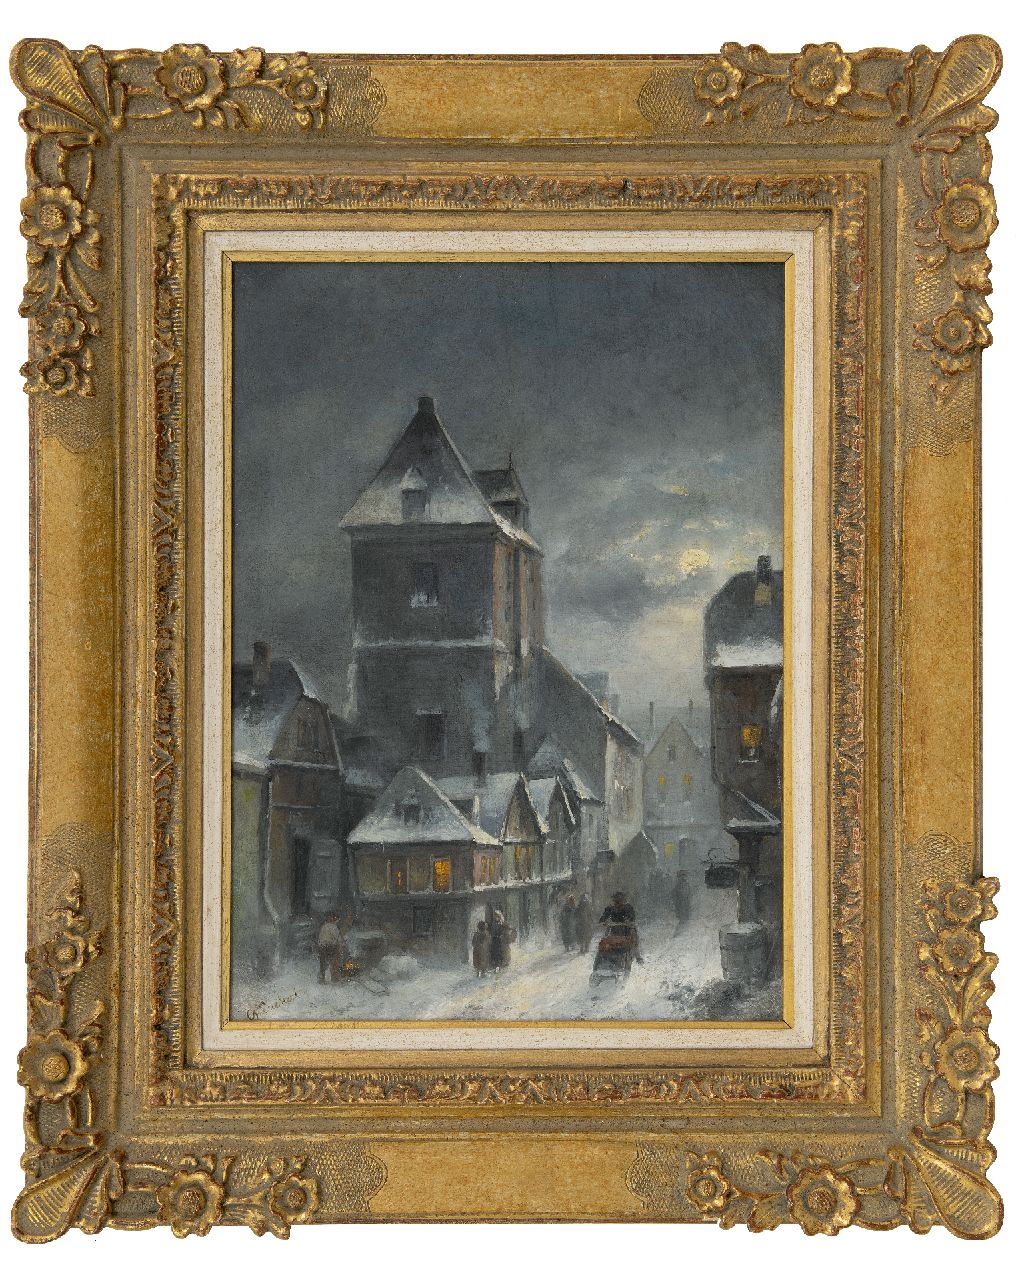 Leickert C.H.J.  | 'Charles' Henri Joseph Leickert | Schilderijen te koop aangeboden | Winters stadsgezicht bij vroege avond, olieverf op doek 42,6 x 30,6 cm, gesigneerd linksonder en ca. 1895